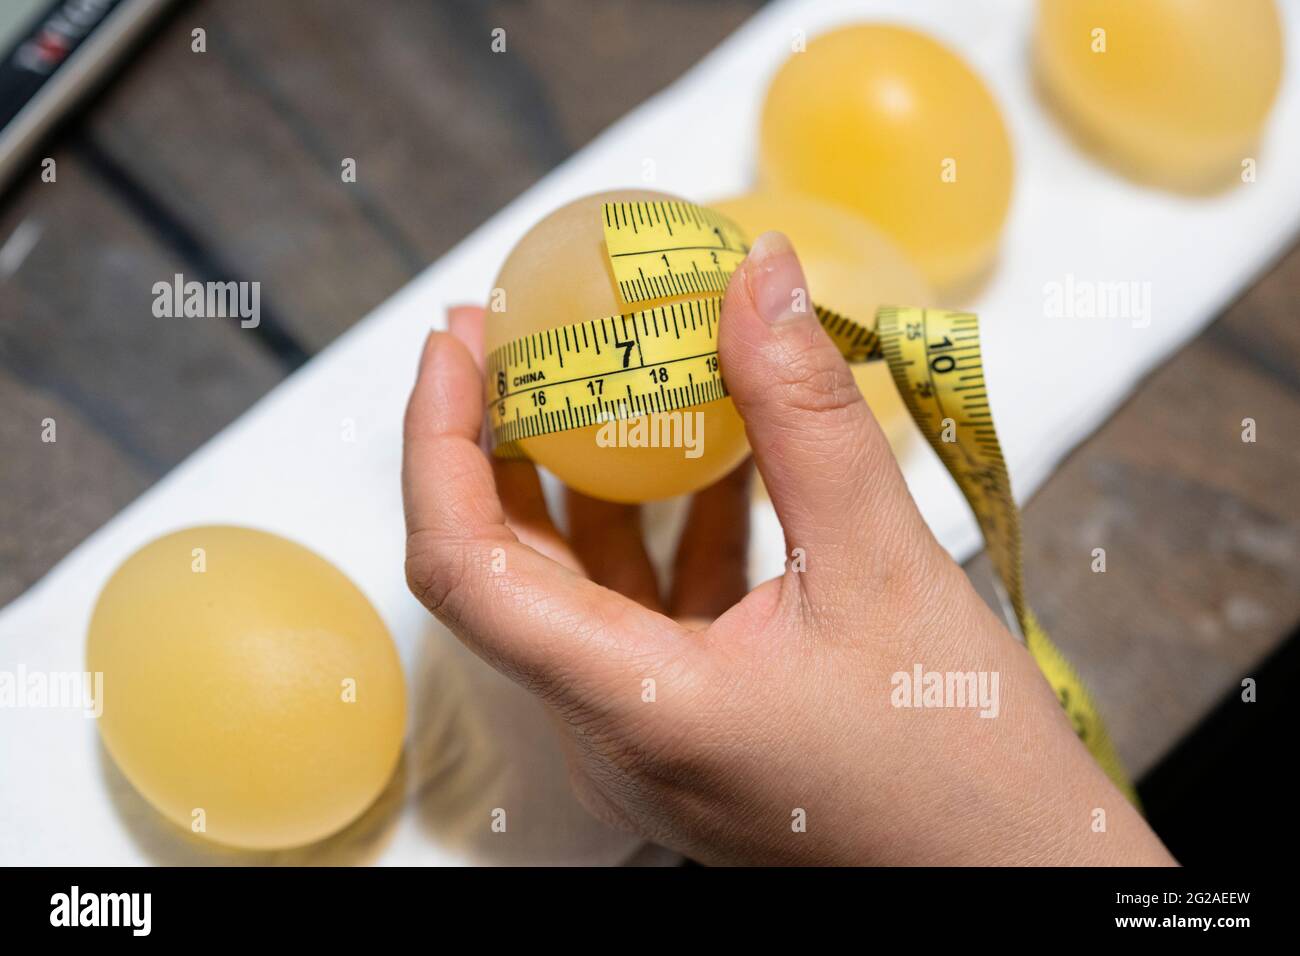 New York, USA - 7. März 2021: Student, der nach einem Experiment im Umkehrosmoselabor Messungen an einem Ei macht, indem er das Ei in Essig und Maissirup einweicht Stockfoto